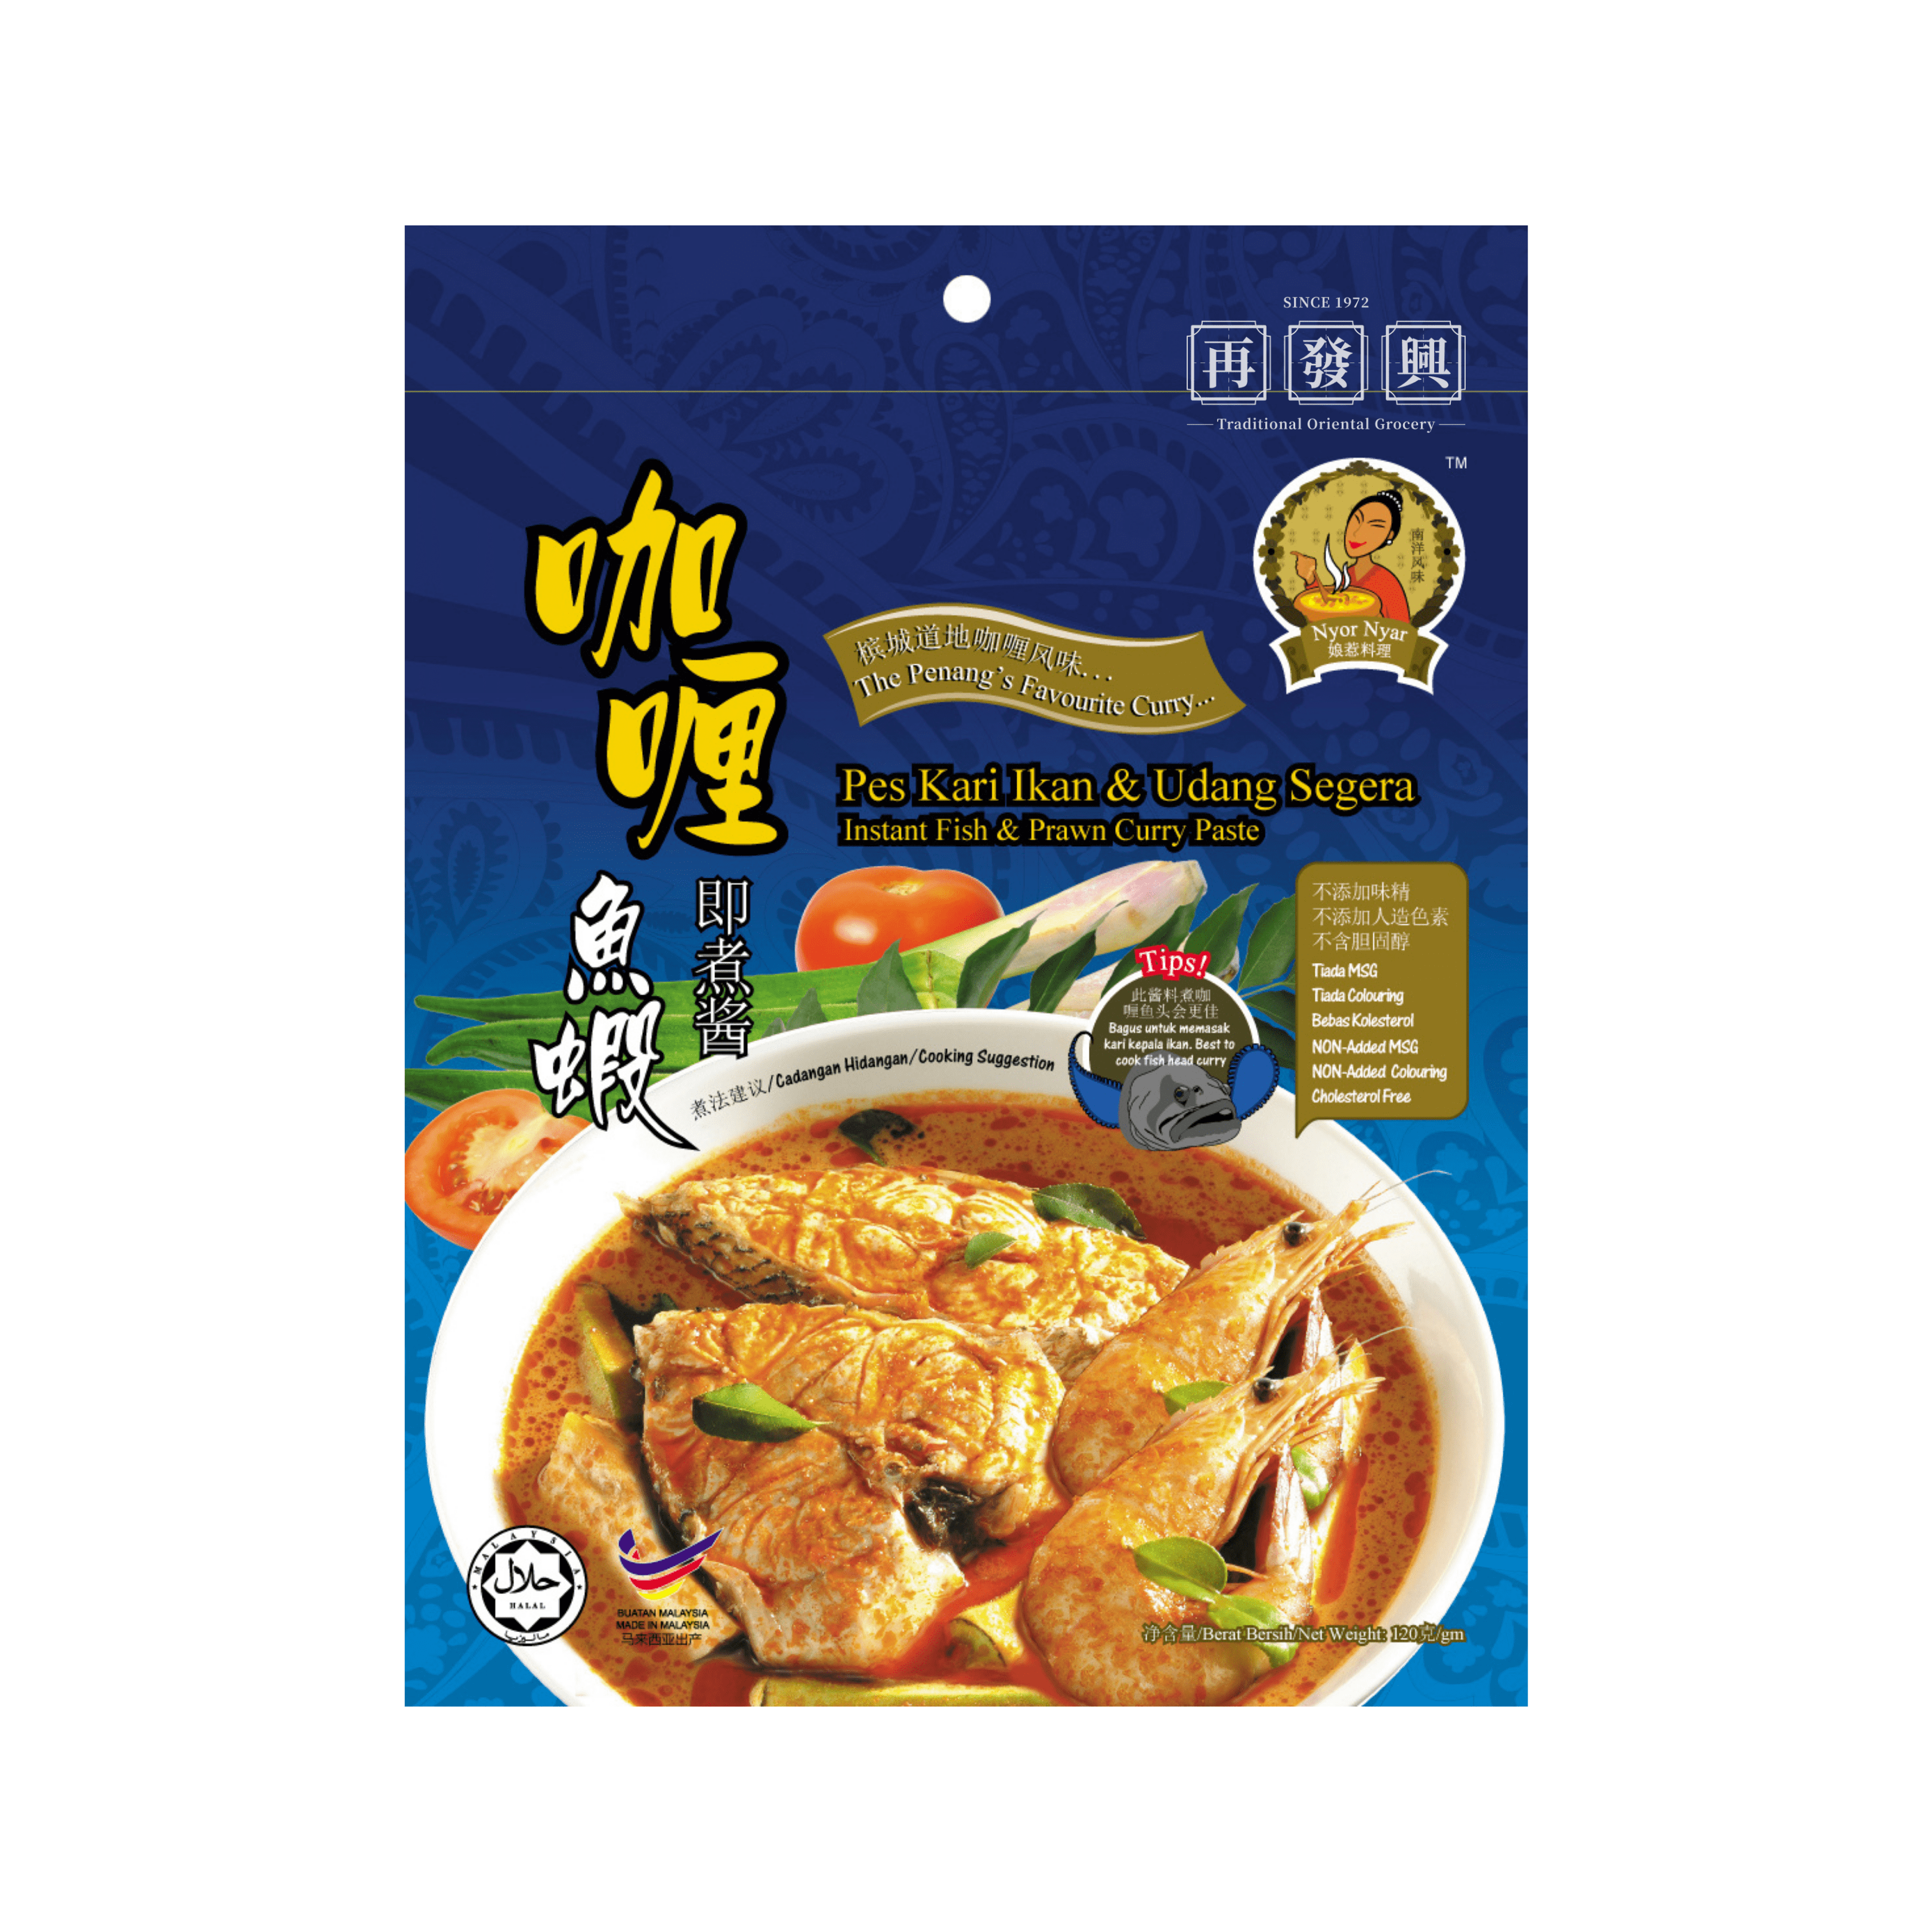 Nyor Nyar Instant Fish & Prawn Curry Paste 150g